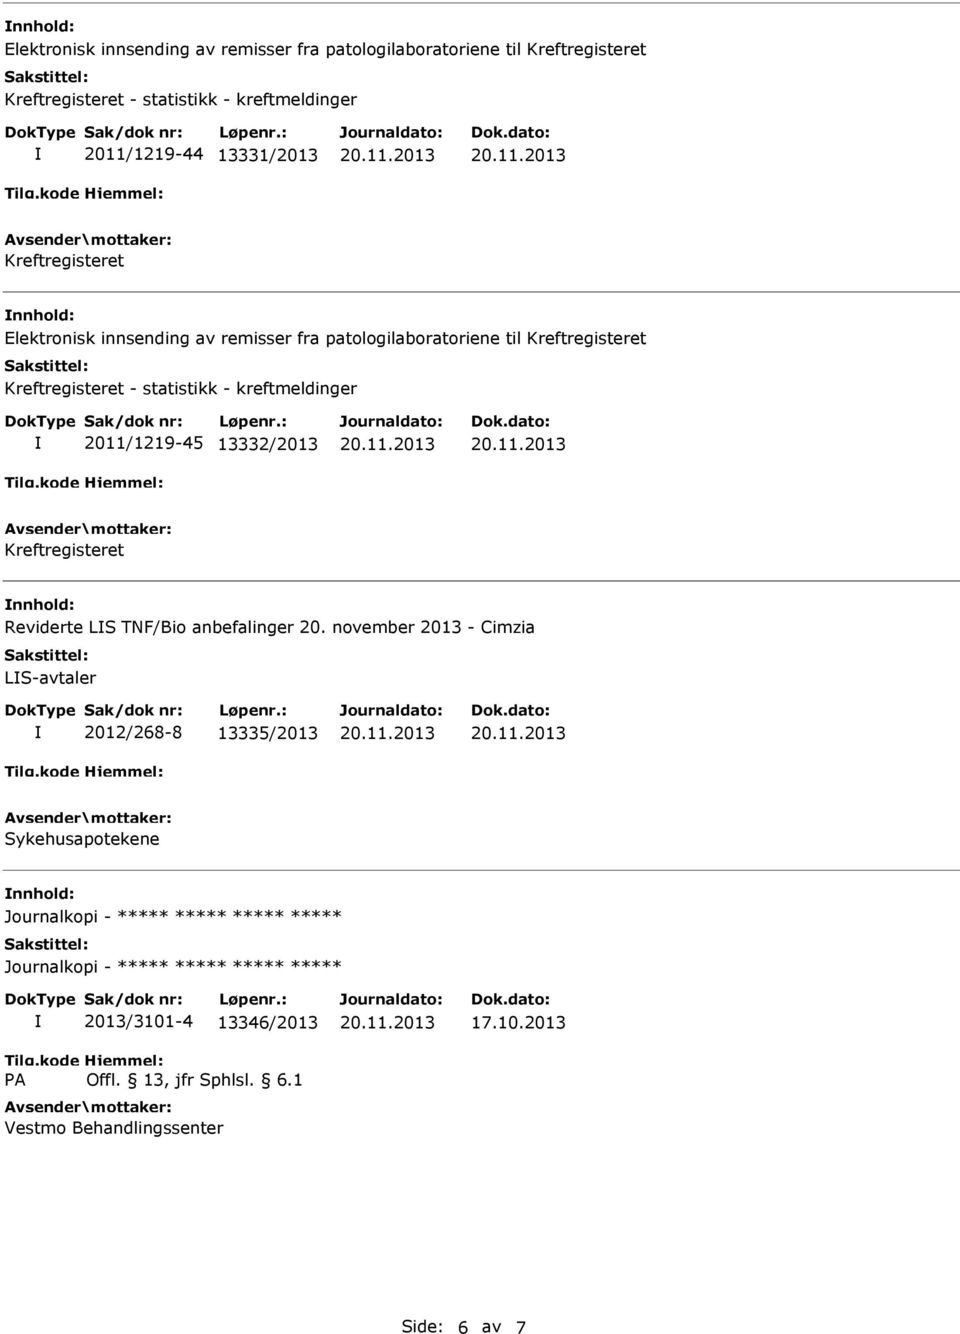 november 2013 - Cimzia LS-avtaler 2012/268-8 13335/2013 Sykehusapotekene Journalkopi - Journalkopi - 2013/3101-4 13346/2013 Vestmo